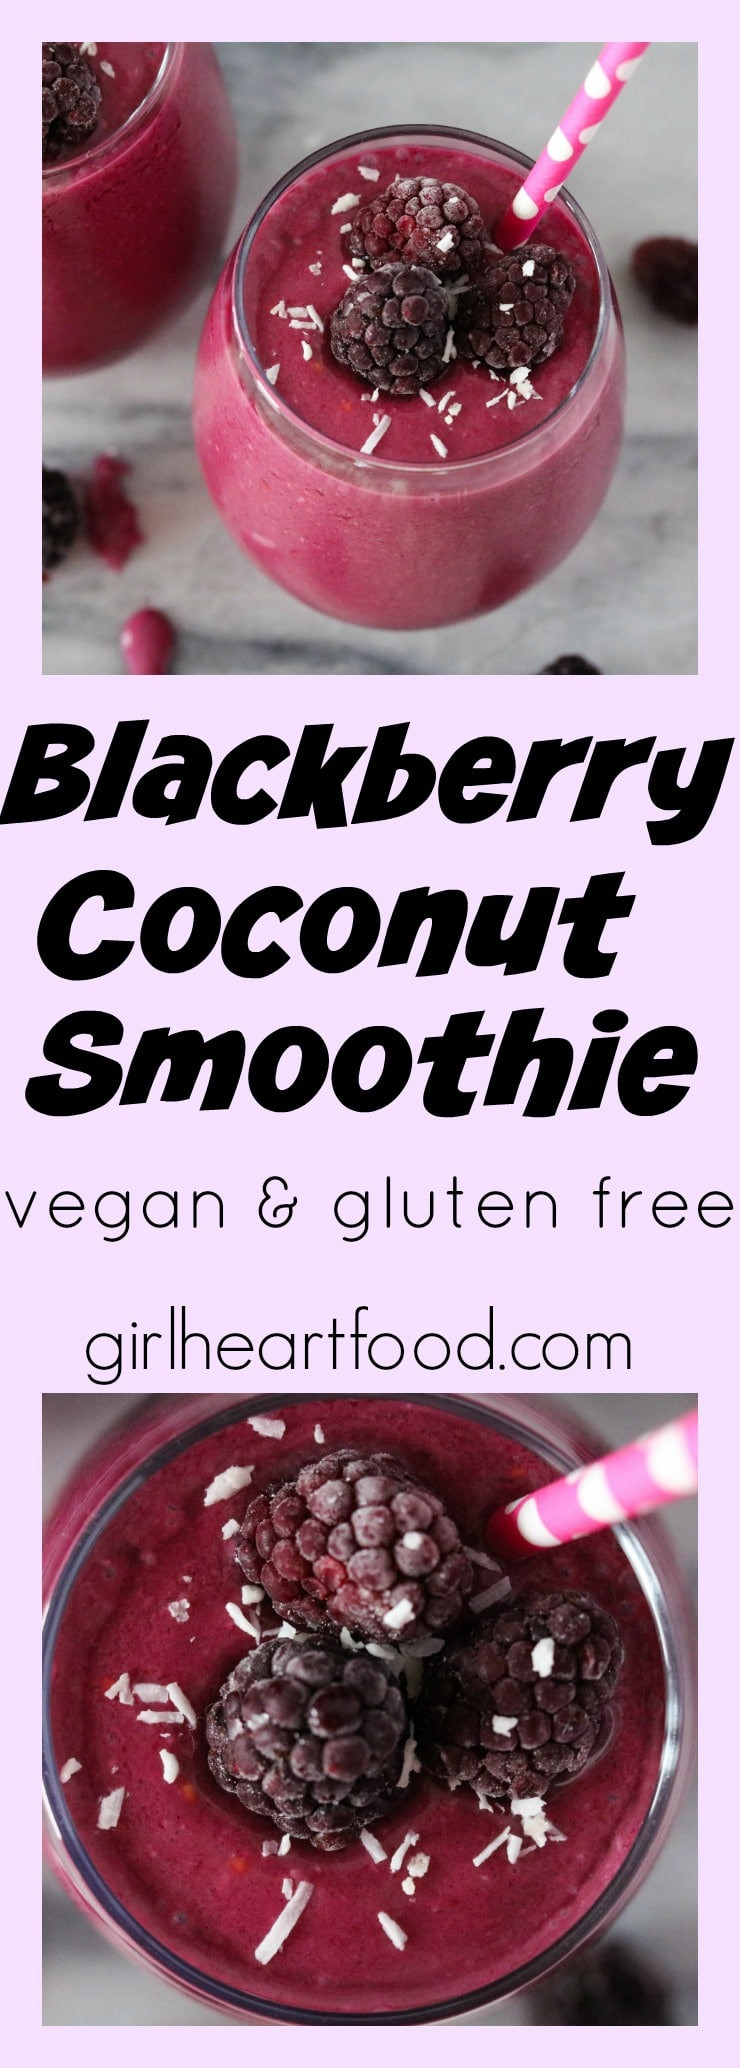 Gluten Free Blackberry Recipes
 Blackberry Coconut Smoothie vegan gluten free